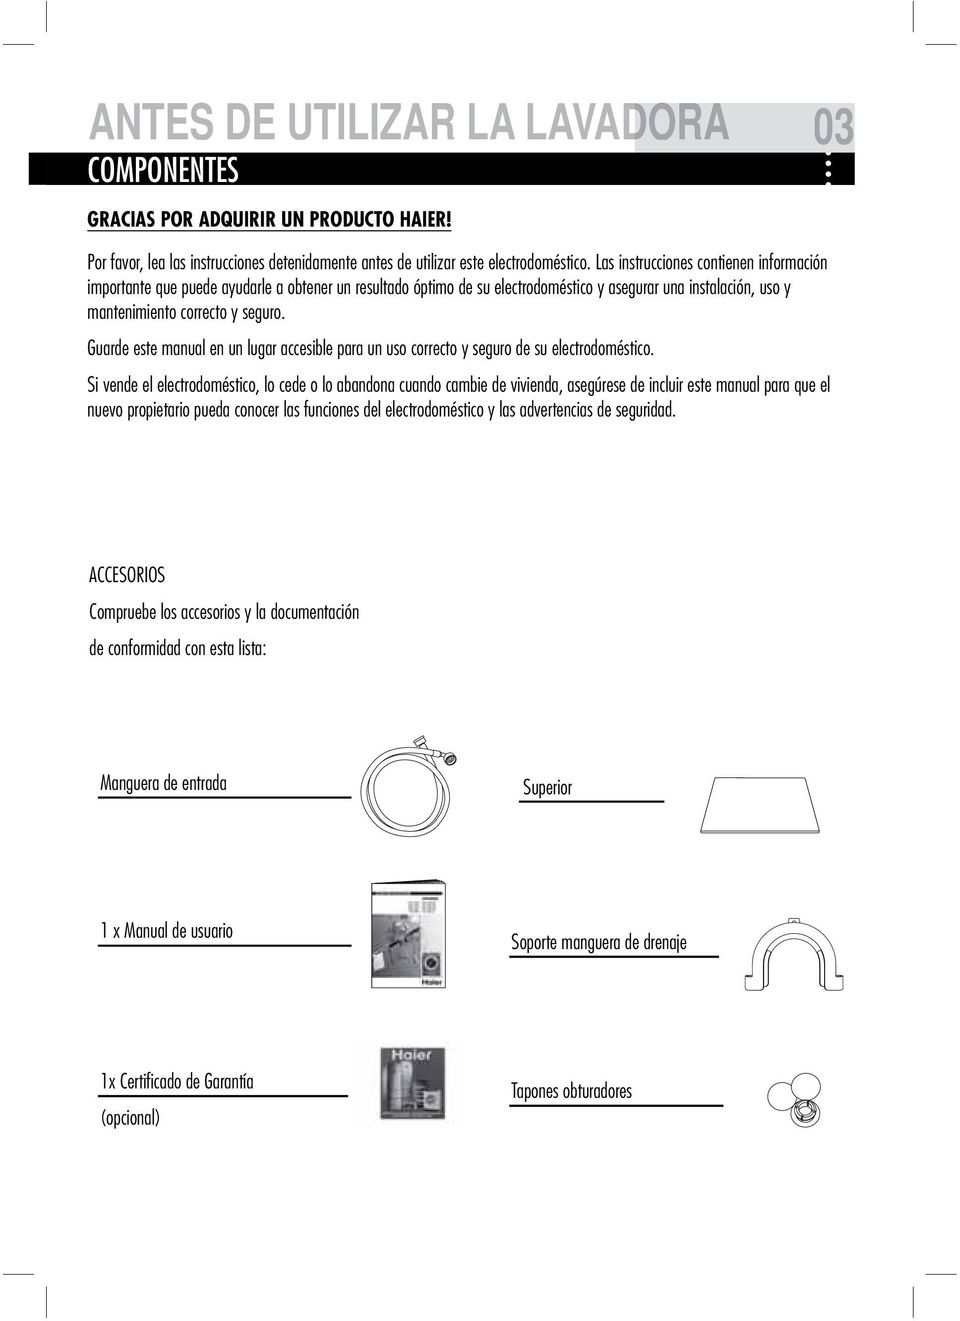 Guarde este manual en un lugar accesible para un uso correcto y seguro de su electrodoméstico.